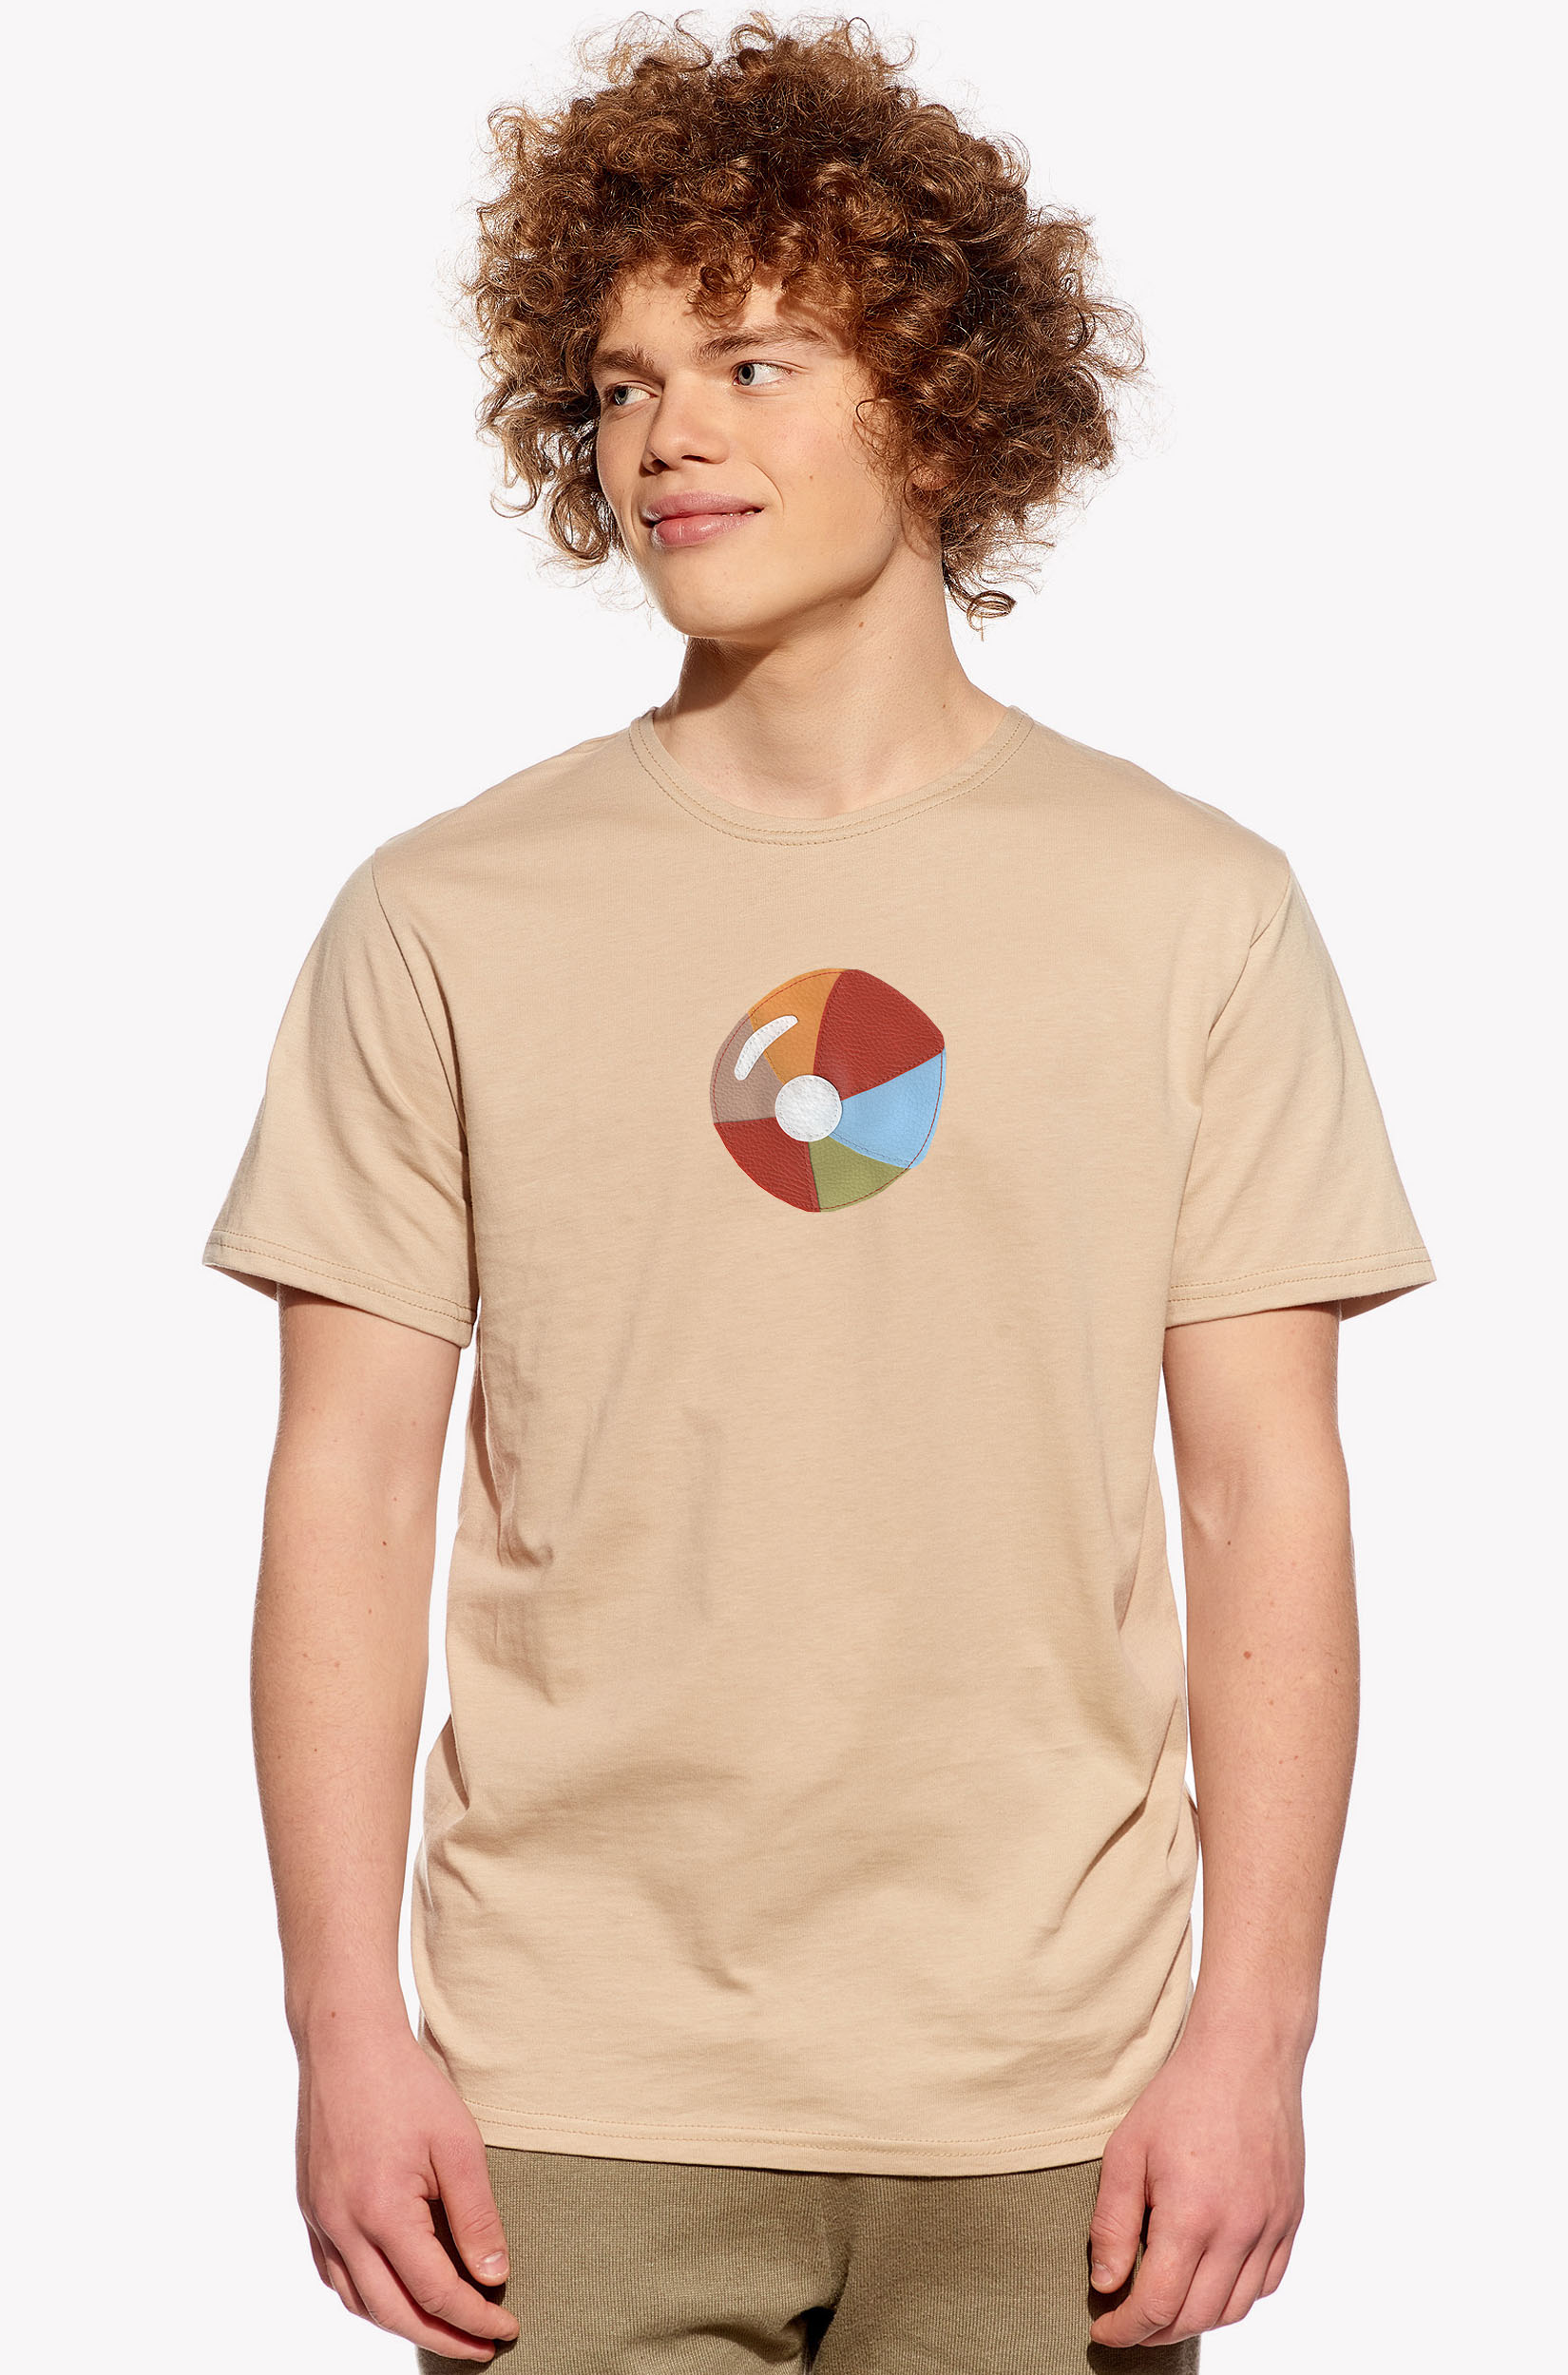 Shirt with ball